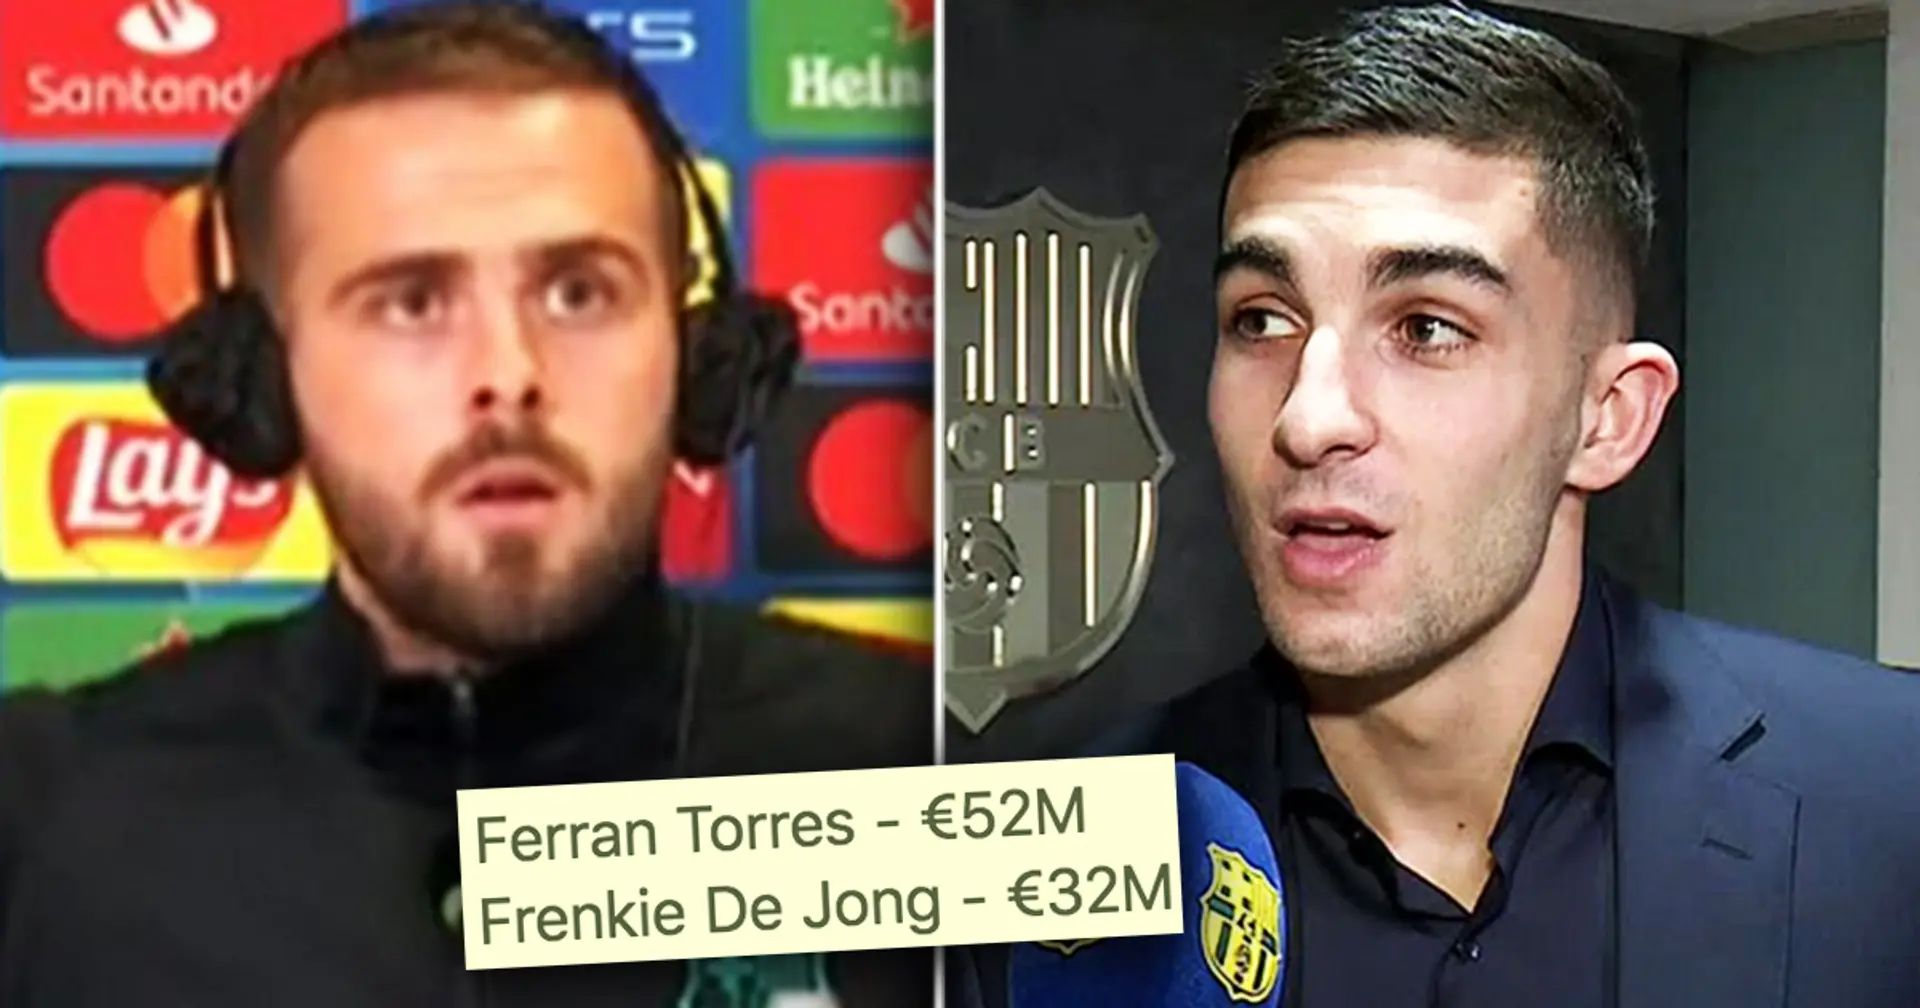 52M d'euros pour Ferran et plus: un rapport choquant indique que le Barça doit encore de l'argent à 4 clubs pour les transferts